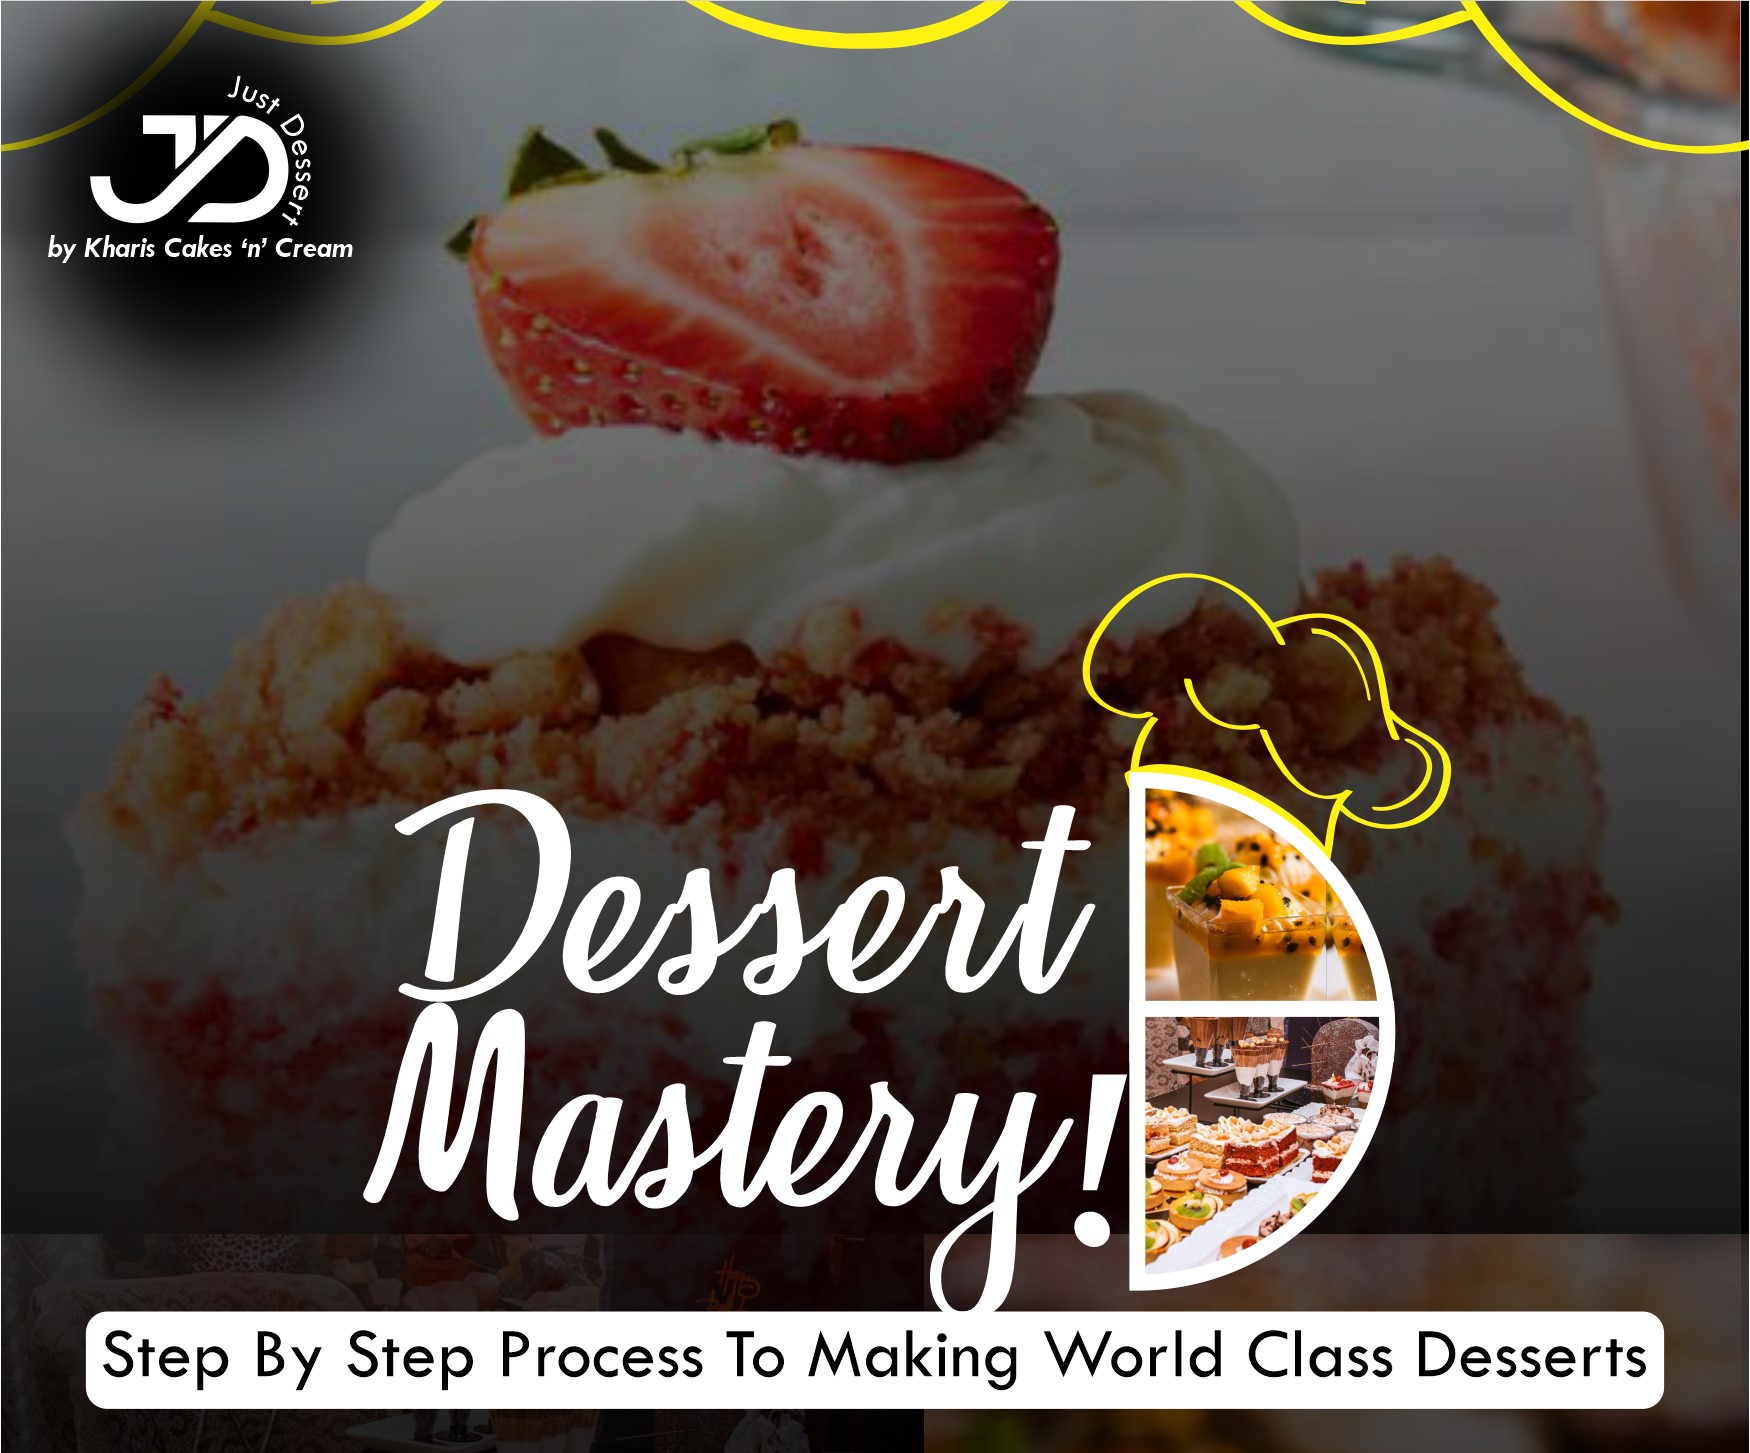 Dessert Mastery